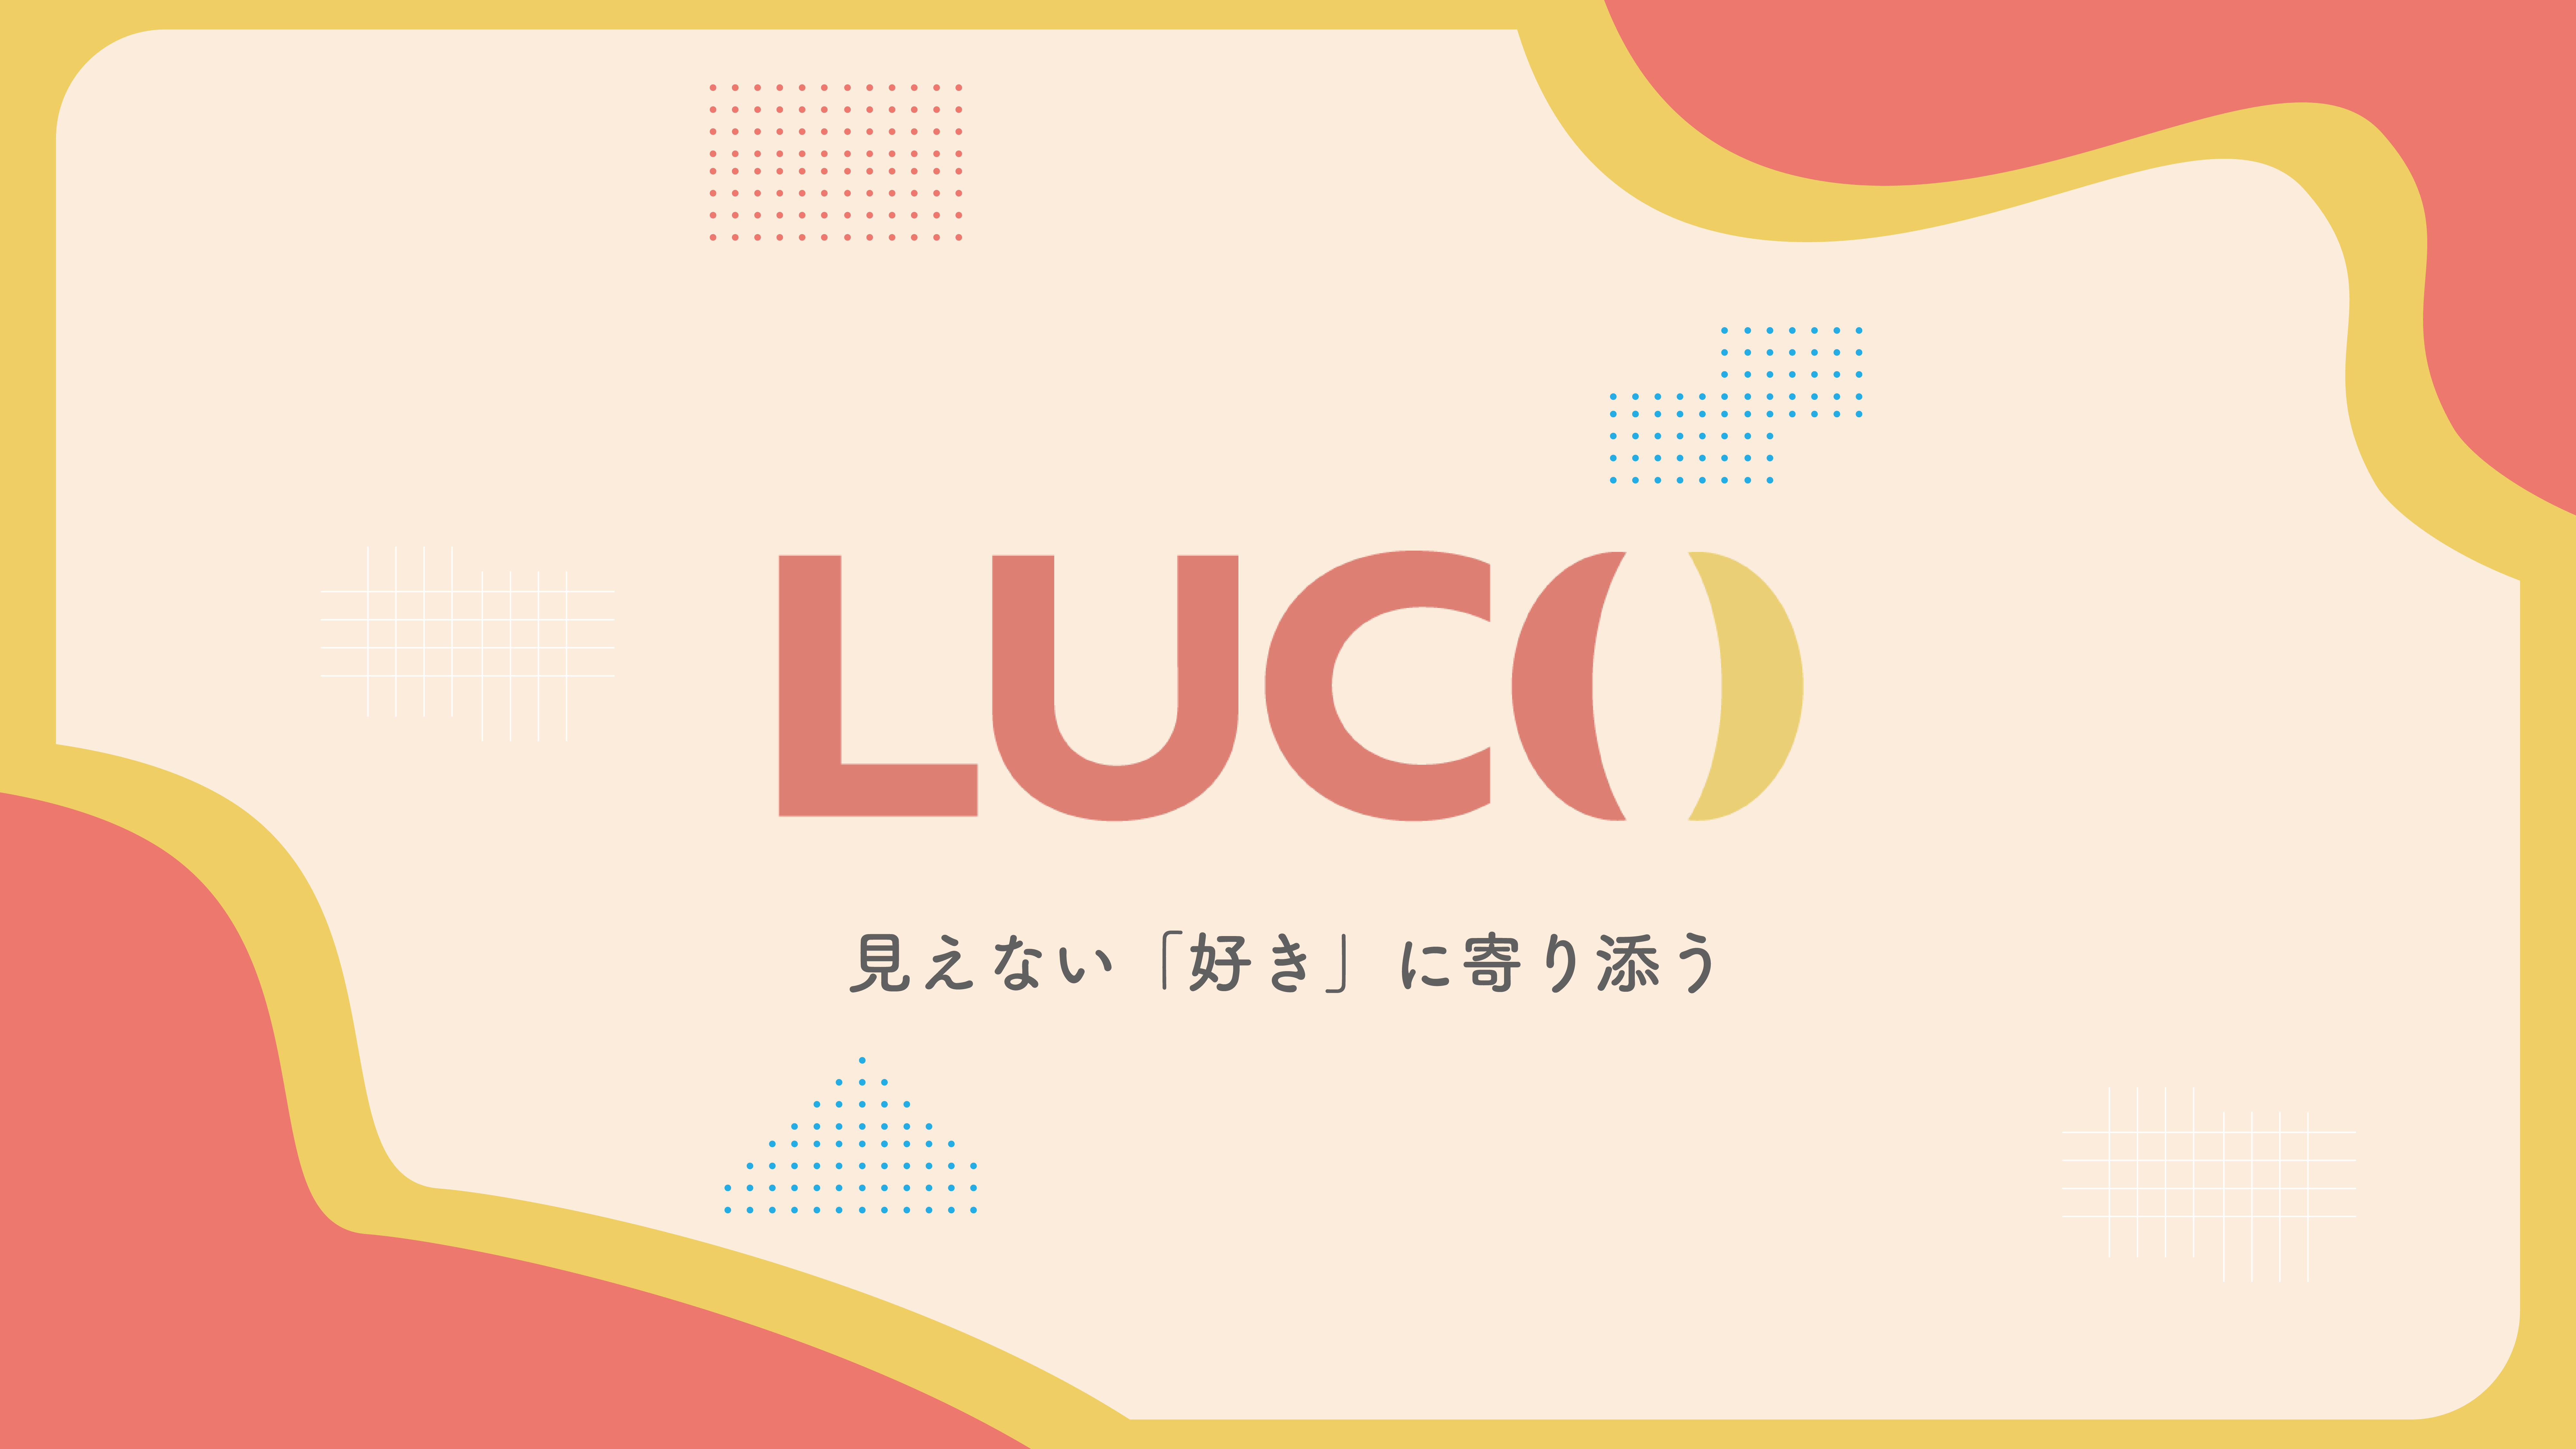 株式会社lucoの年末年始の営業について